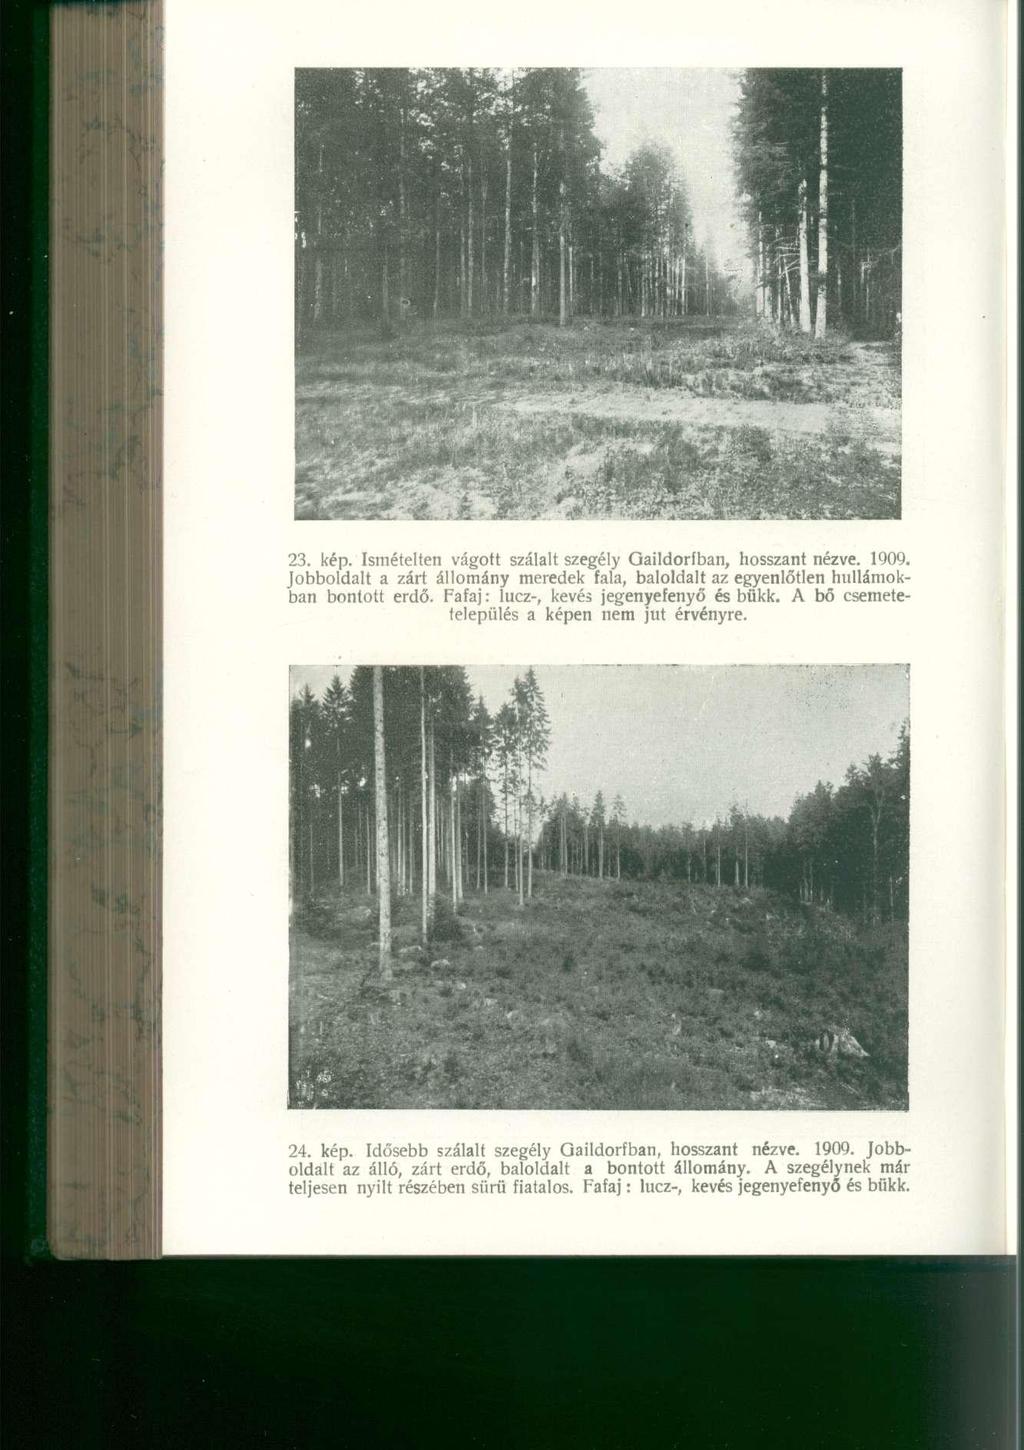 23. kép. Ismételte n vágot t szálal t szegél y Gaildorfban, hosszan t nézve. 1909. Jobboldalt a zár t állomán y merede k fala, baloldal t a z egyenlőtlen hullámok - ban bontot t erdő.